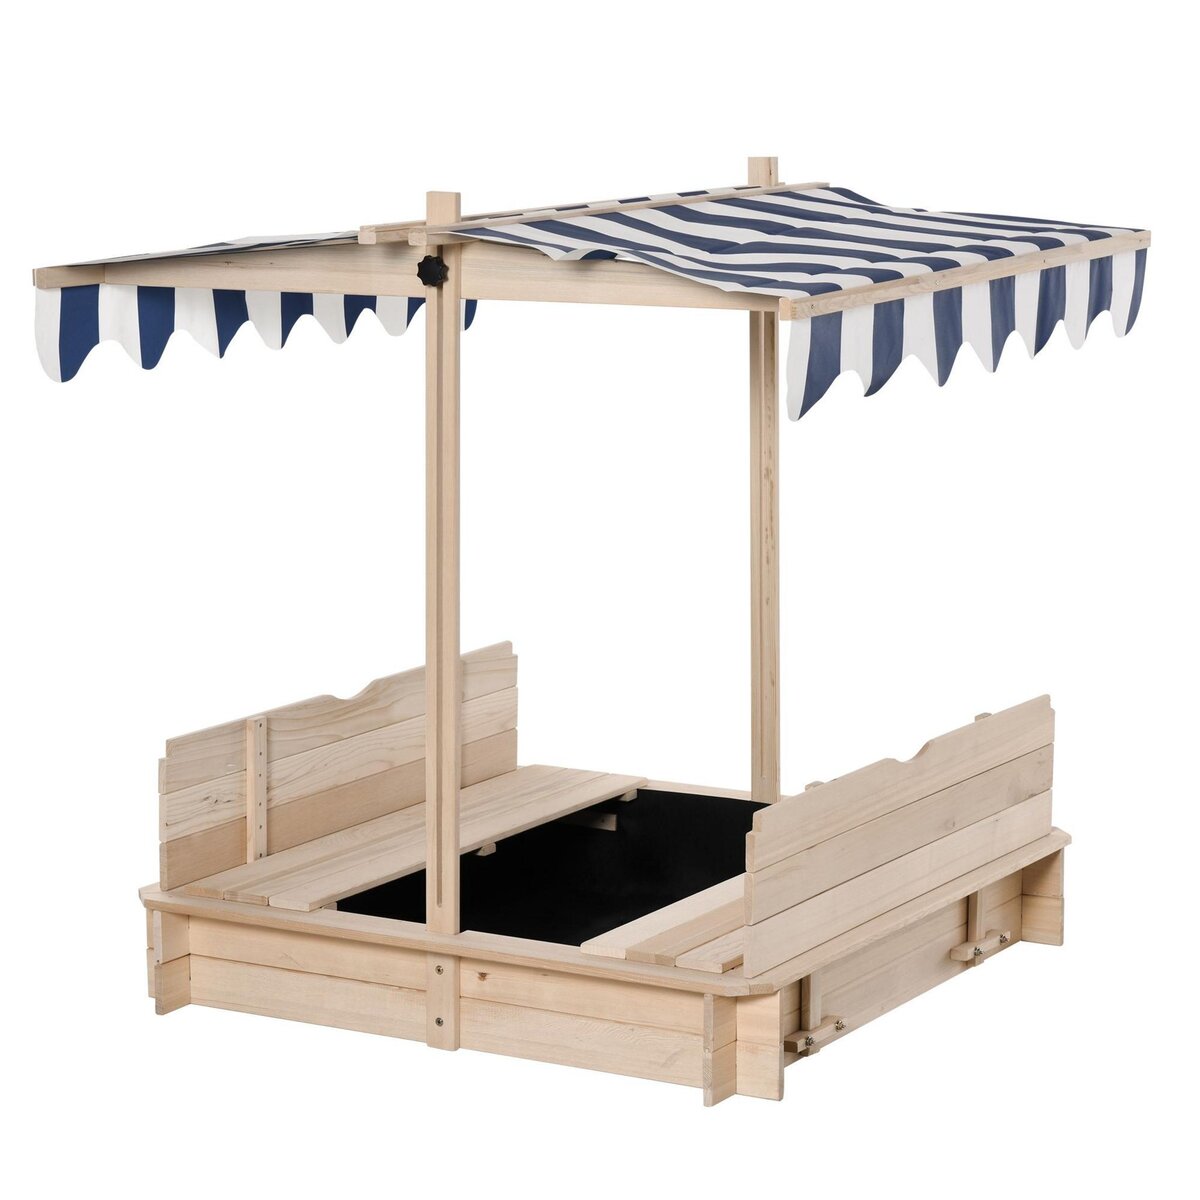 OUTSUNNY Bac à sable carré en bois pour enfant dim. 106L x 106l cm avec  bancs et couvercle - auvent réglable pas cher 